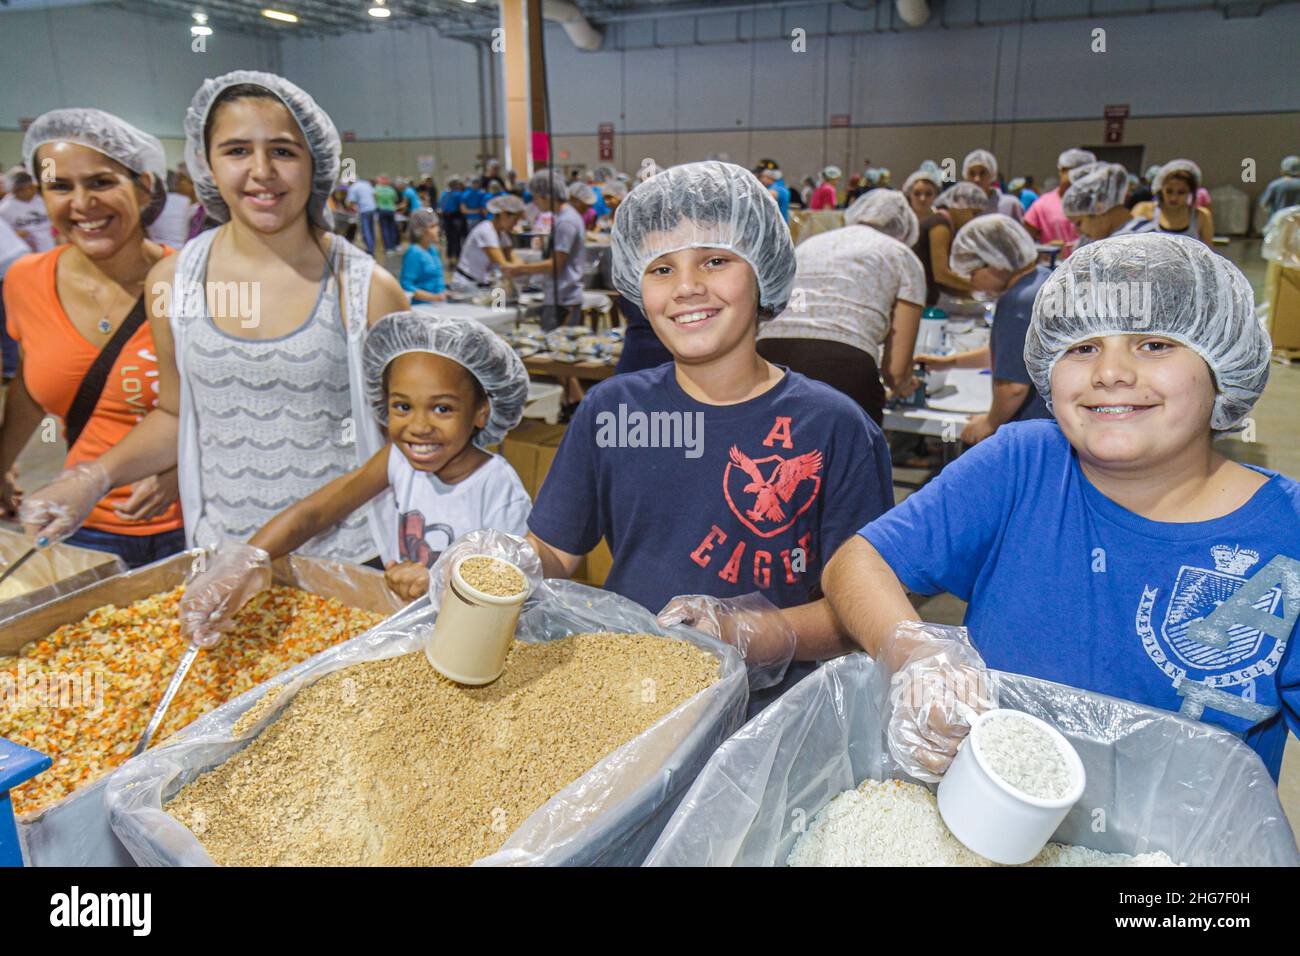 Florida, Miami Feed Meine hungernden Kinder Freiwillige Freiwilligenarbeit, Teamarbeit Verpackung Mahlzeiten, Hispanic Schwarze weibliche Teenager-Mädchen Jungen Studenten tragen Haarnetz Stockfoto